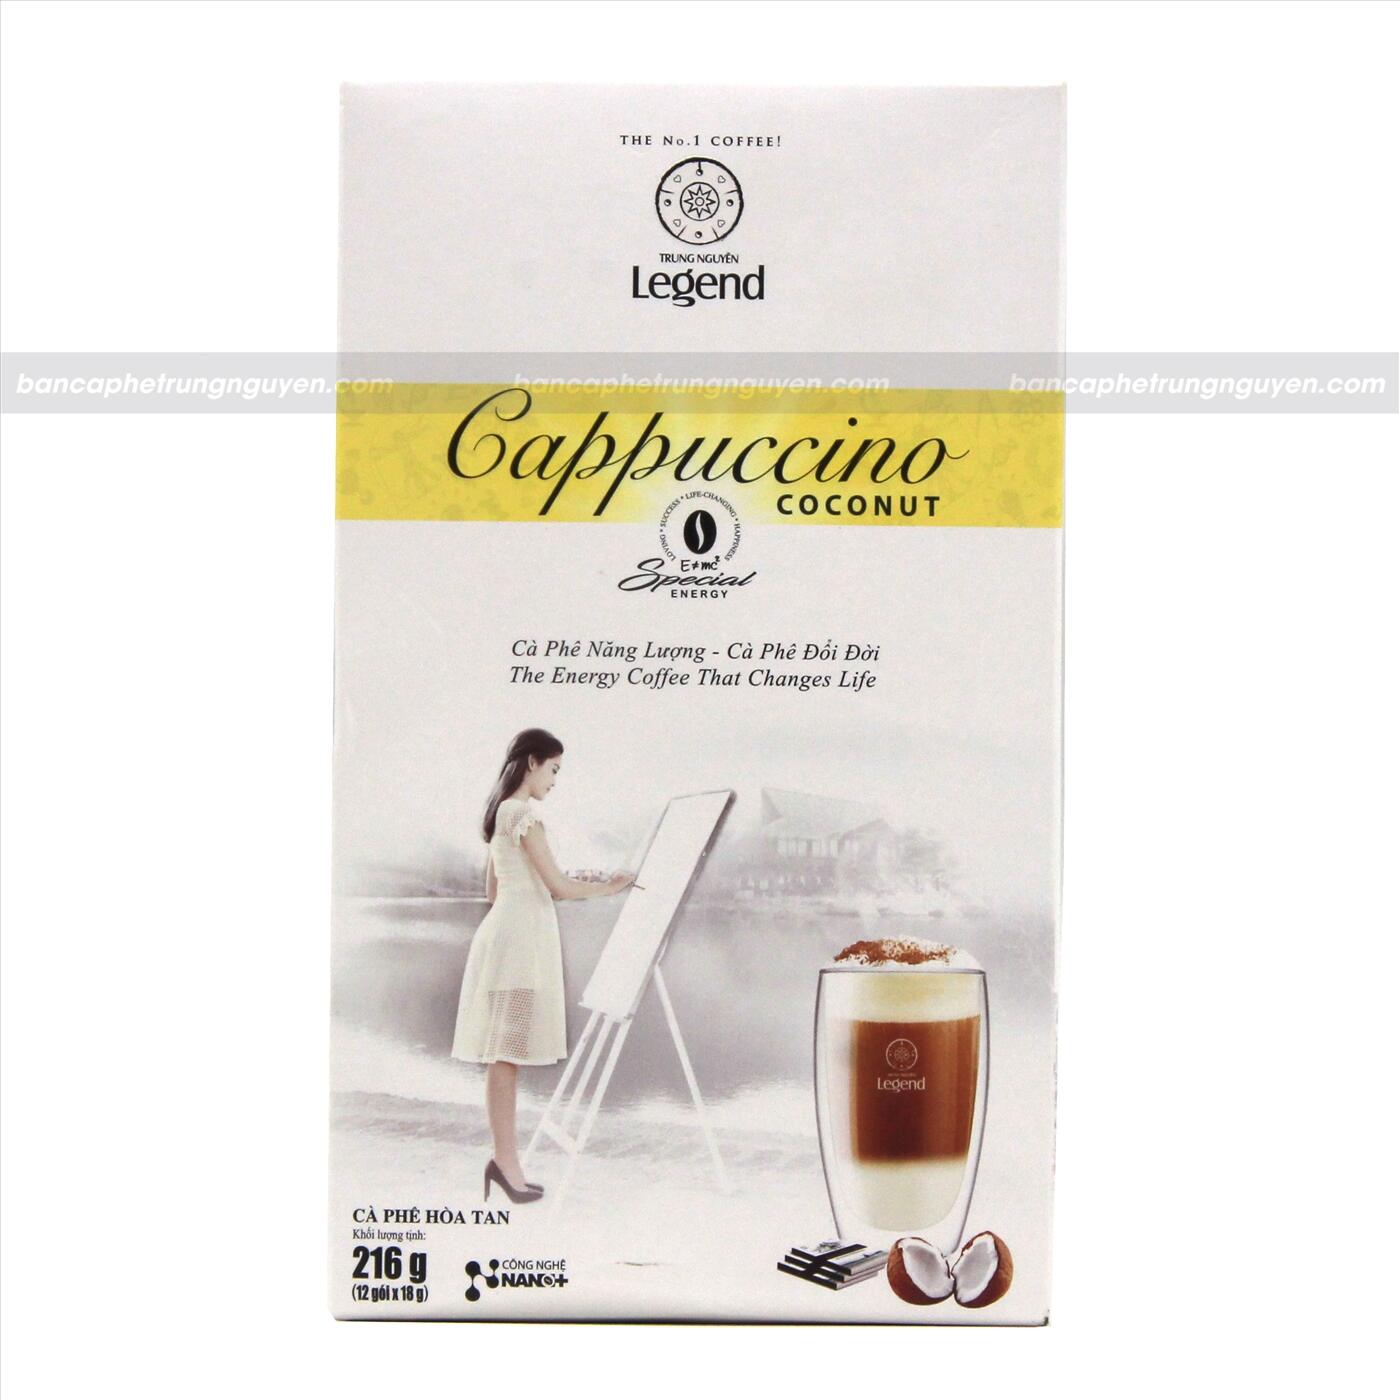 Cà phê hòa tan G7 Trung Nguyên Legend Cappuccino hương Coconut